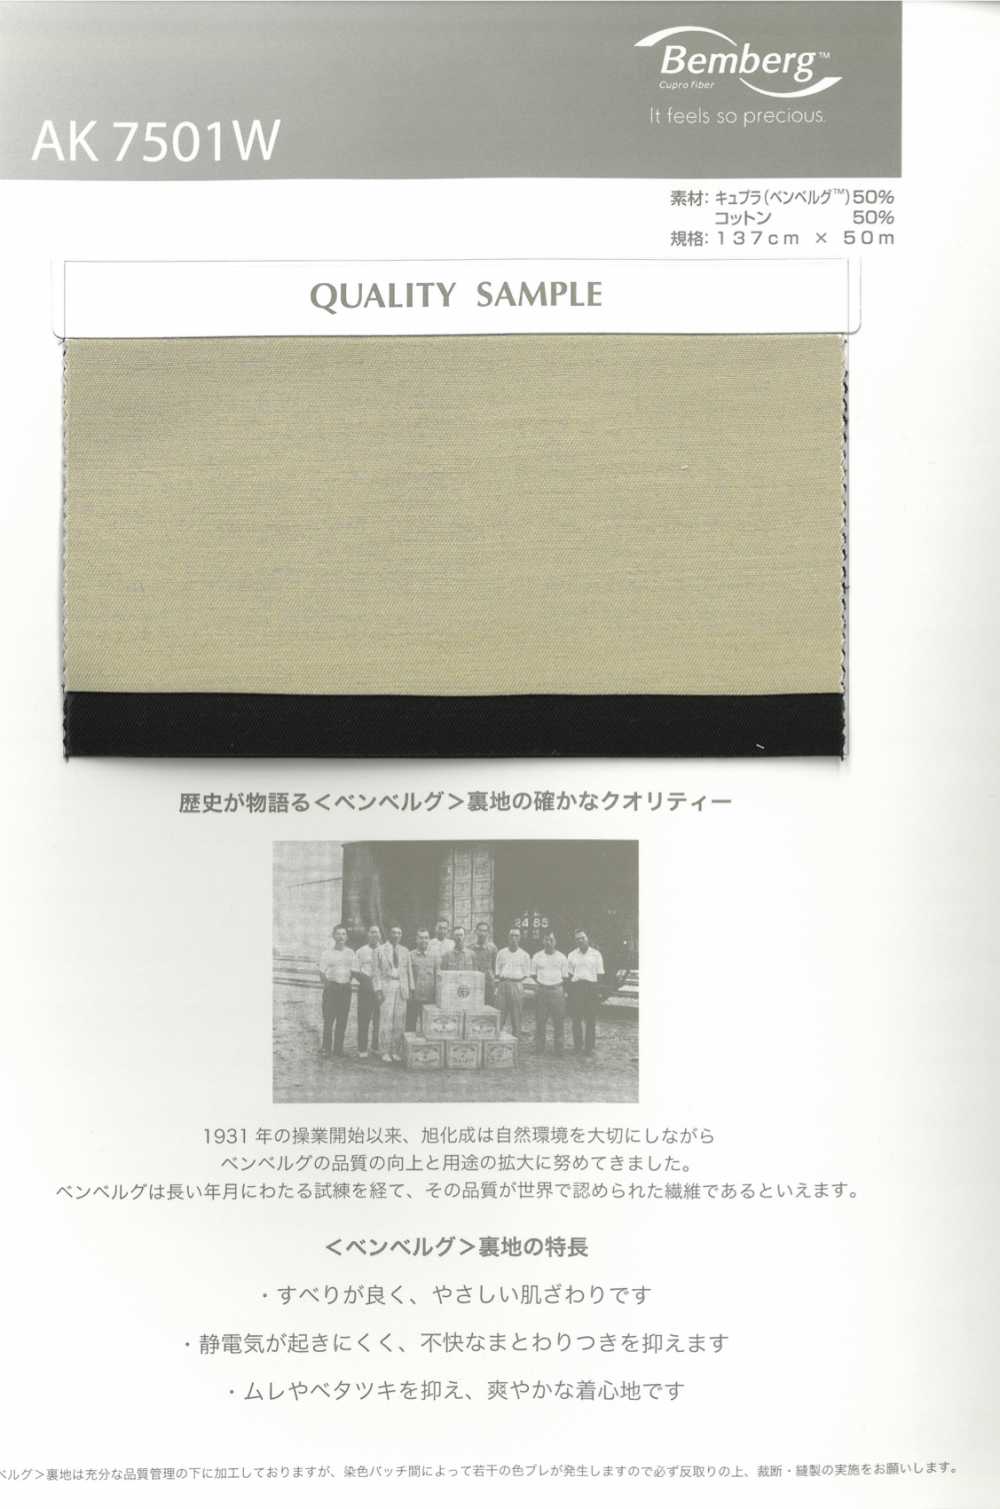 AK7501W Gewebtes Futter Aus Cupra-Baumwolle[Beschichtung] Asahi KASEI